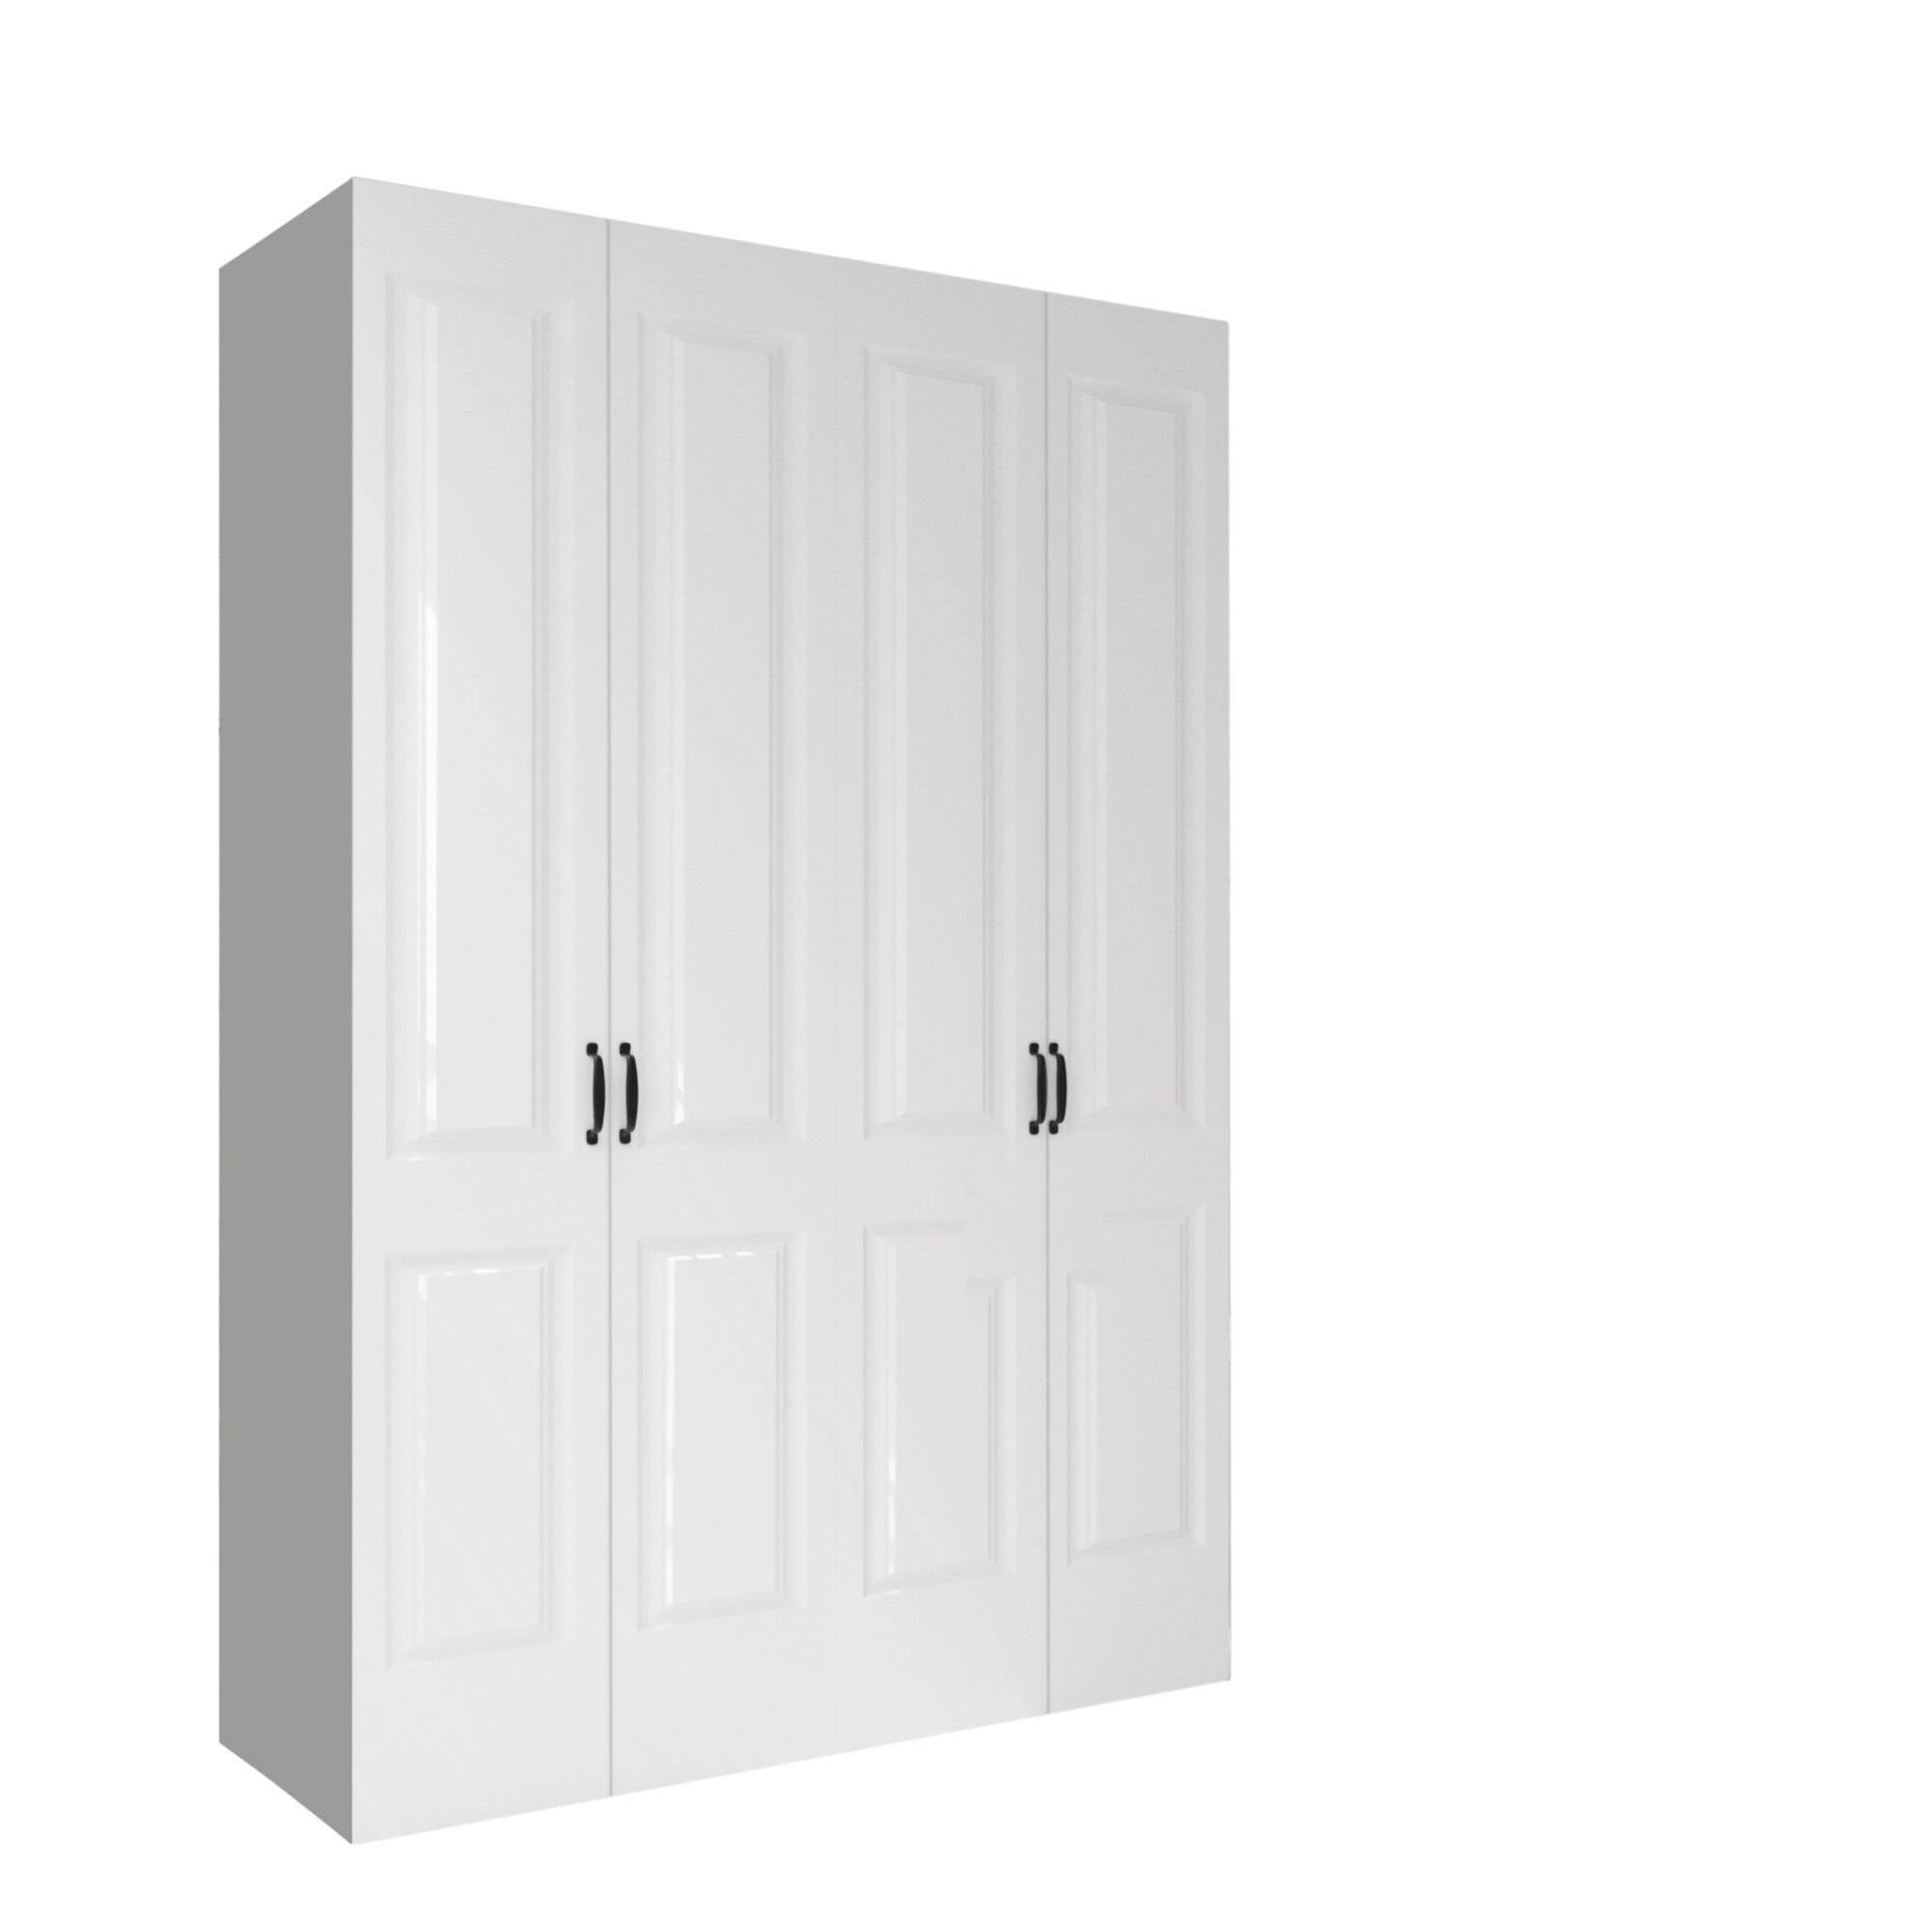 Armario ropero puerta abatible Spaceo home Marsella Blanco 120x240x60 cm